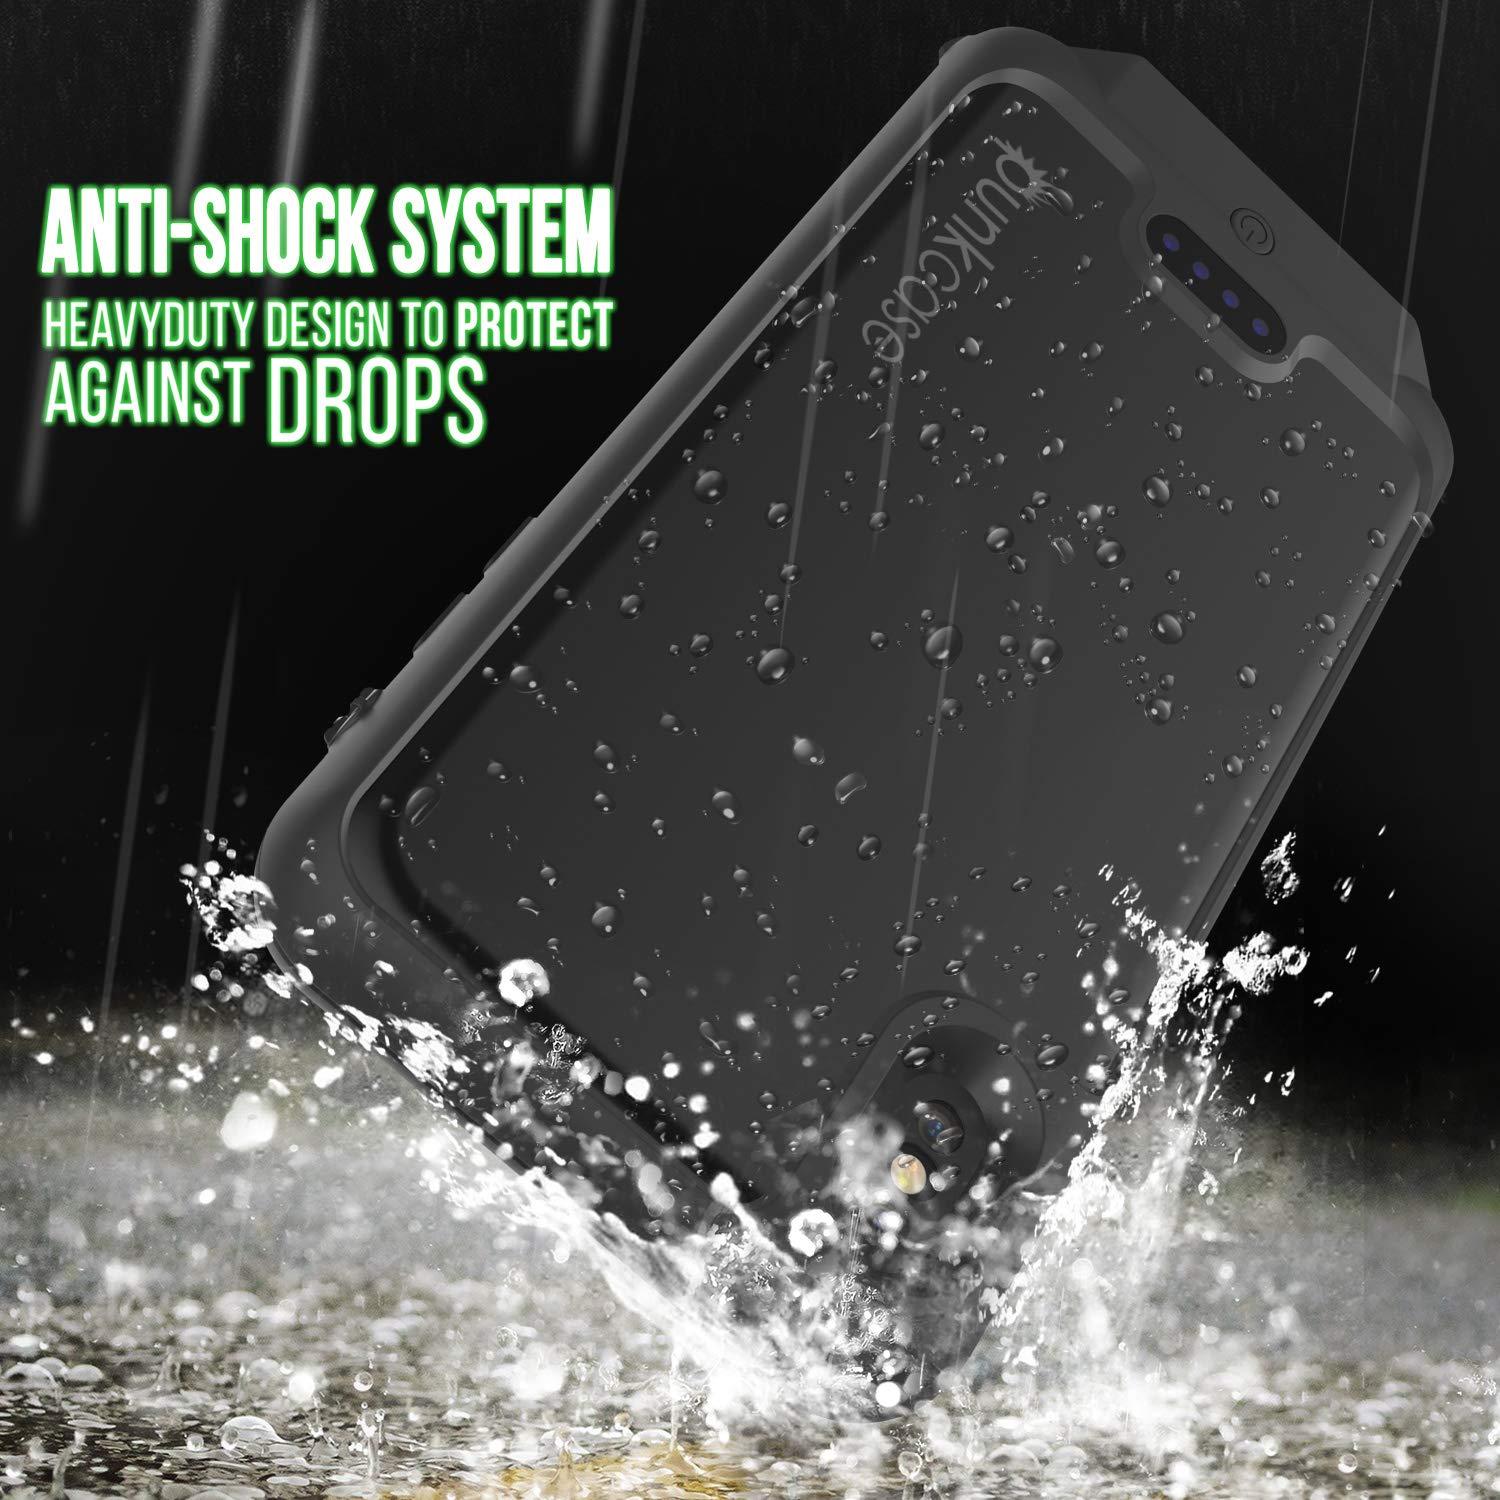 PunkJuice iPhone XS Battery Case, Waterproof, IP68 Certified [Ultra Slim] [Black]